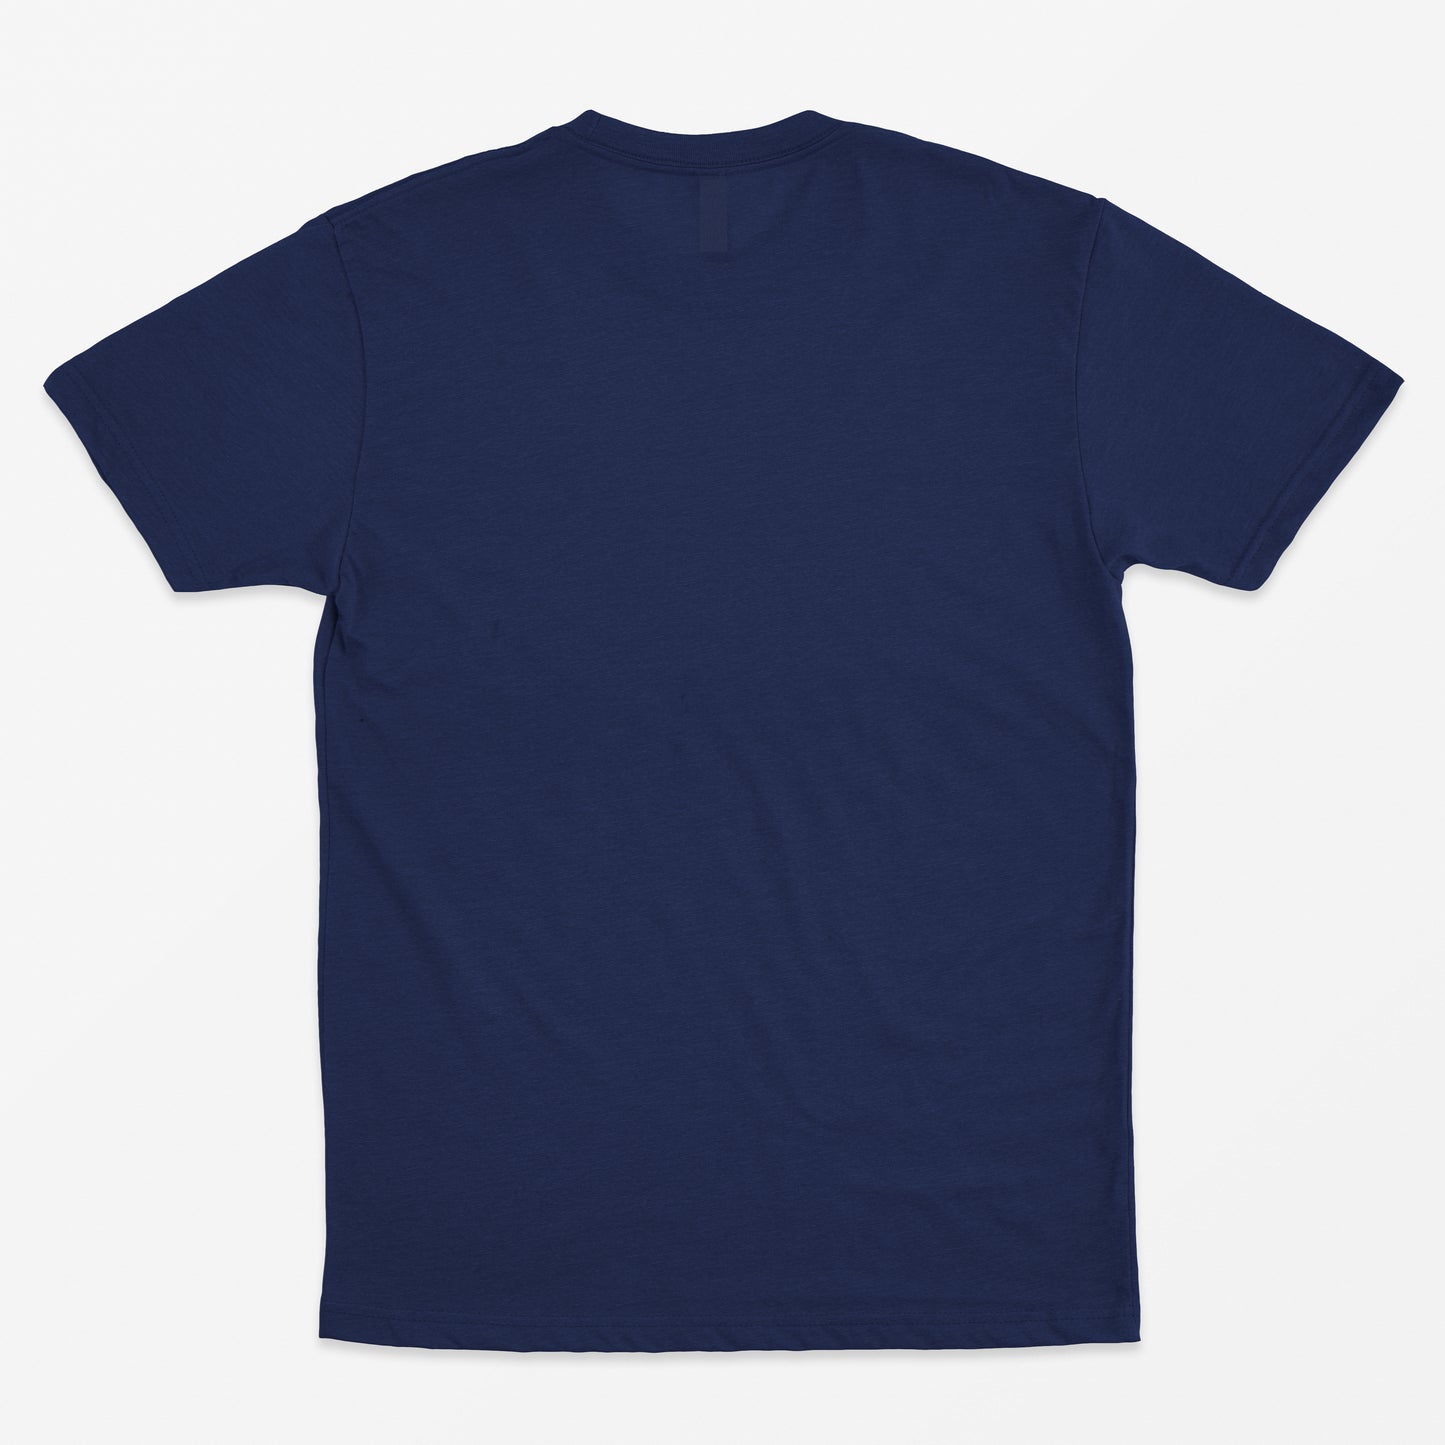 Plain Regular Navy Blue Tshirt